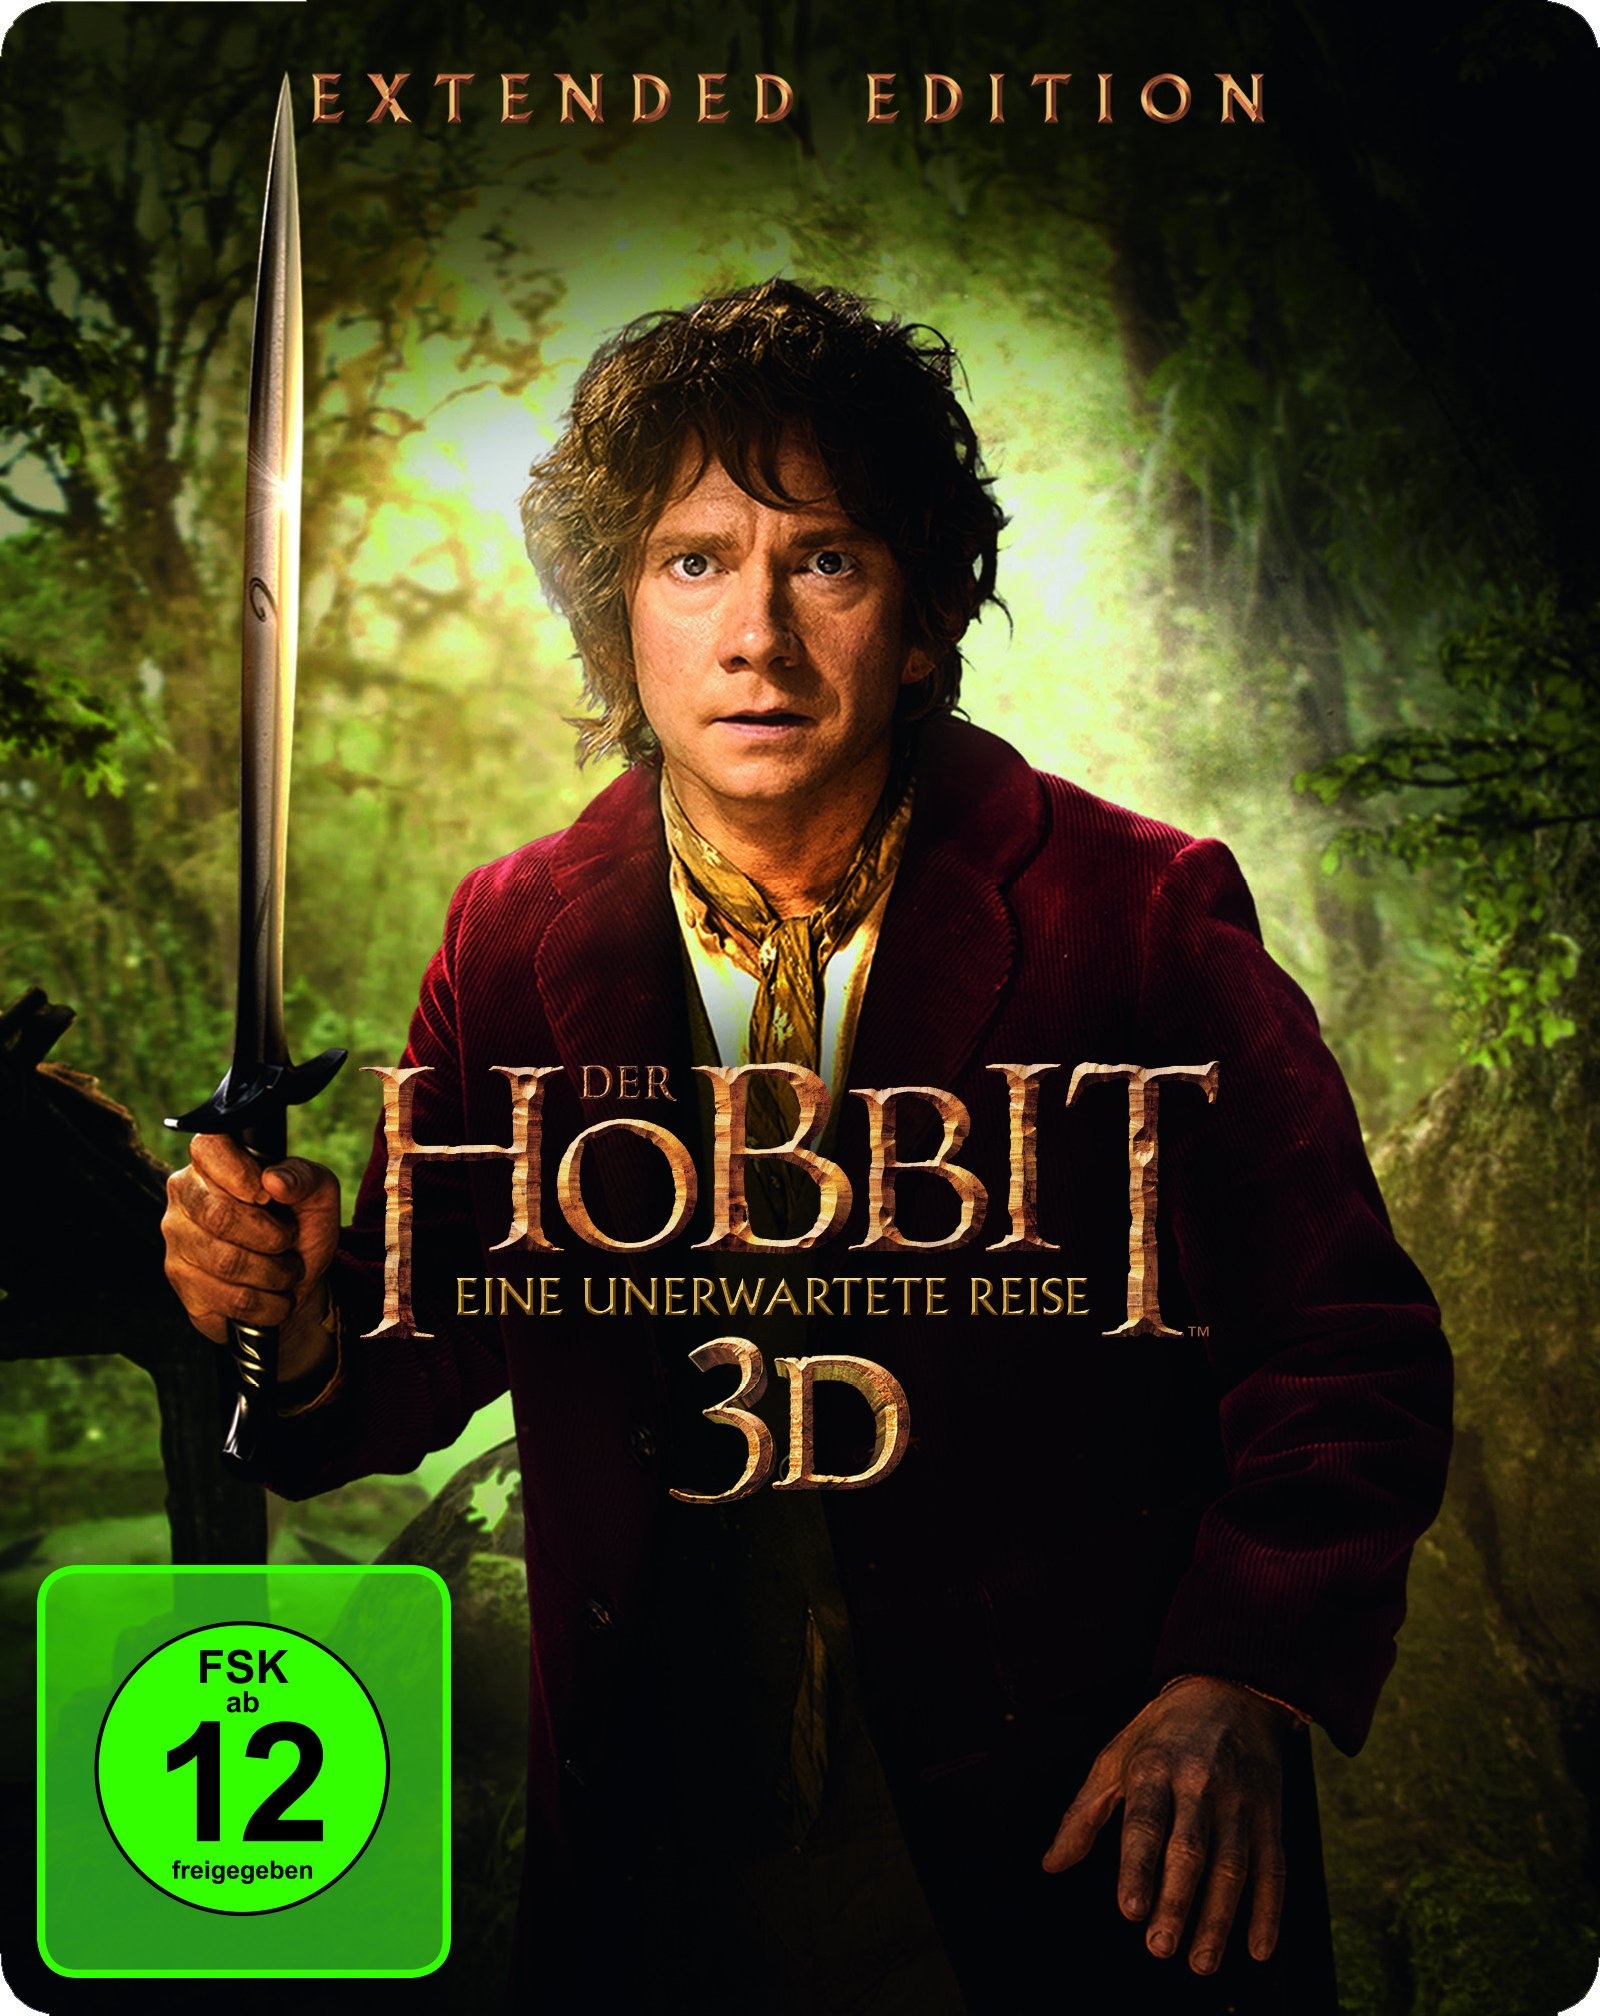 Der Hobbit: Eine unerwartete Reise Extended Edition Steelbook (2D/3D) [3D Blu-ray] (Neu differenzbesteuert)